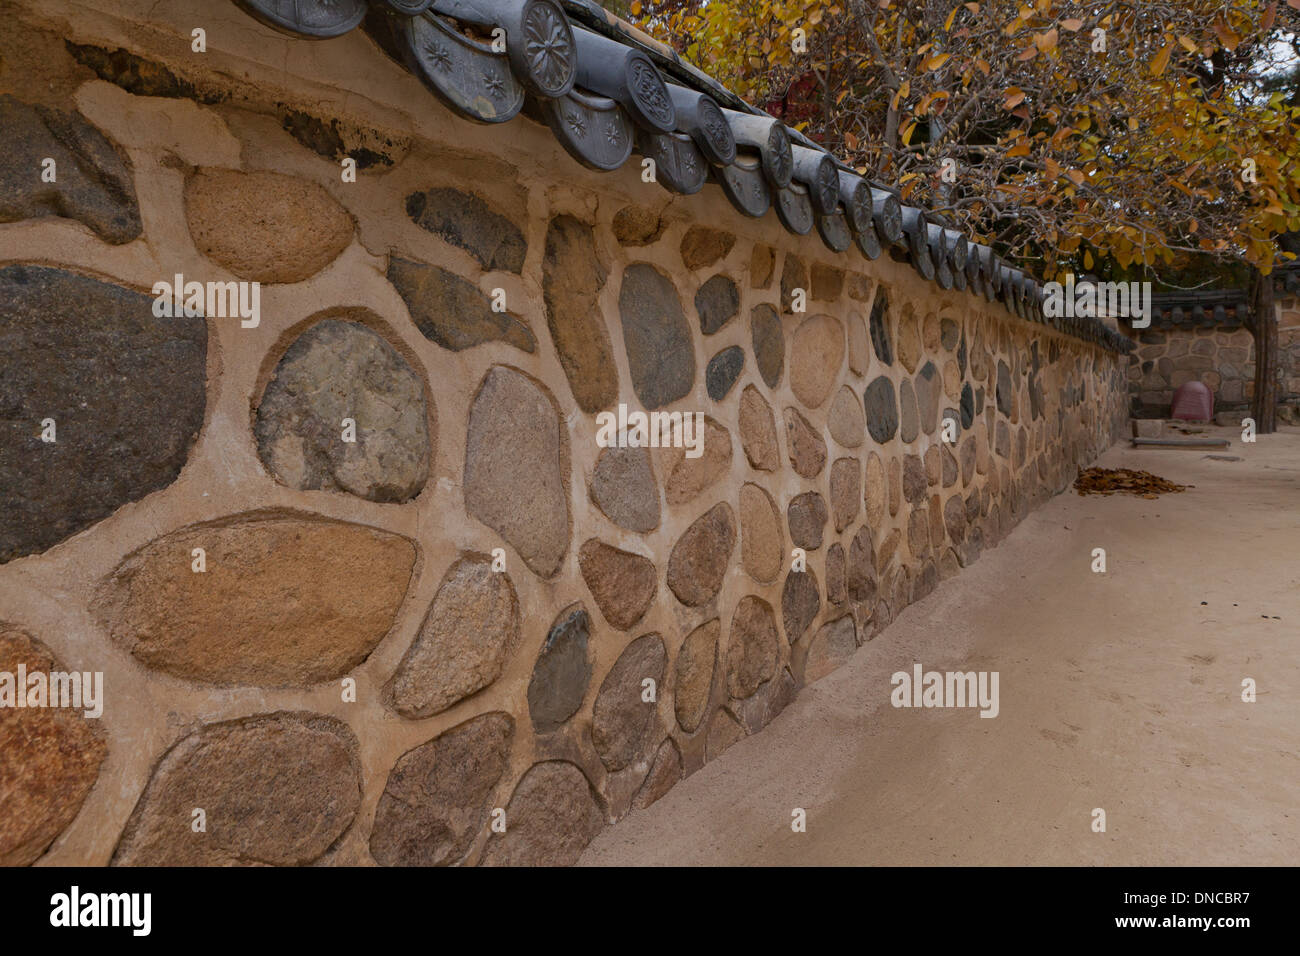 Stone wall fence in the traditional Hanok style - Gyeongju, South Korea Stock Photo